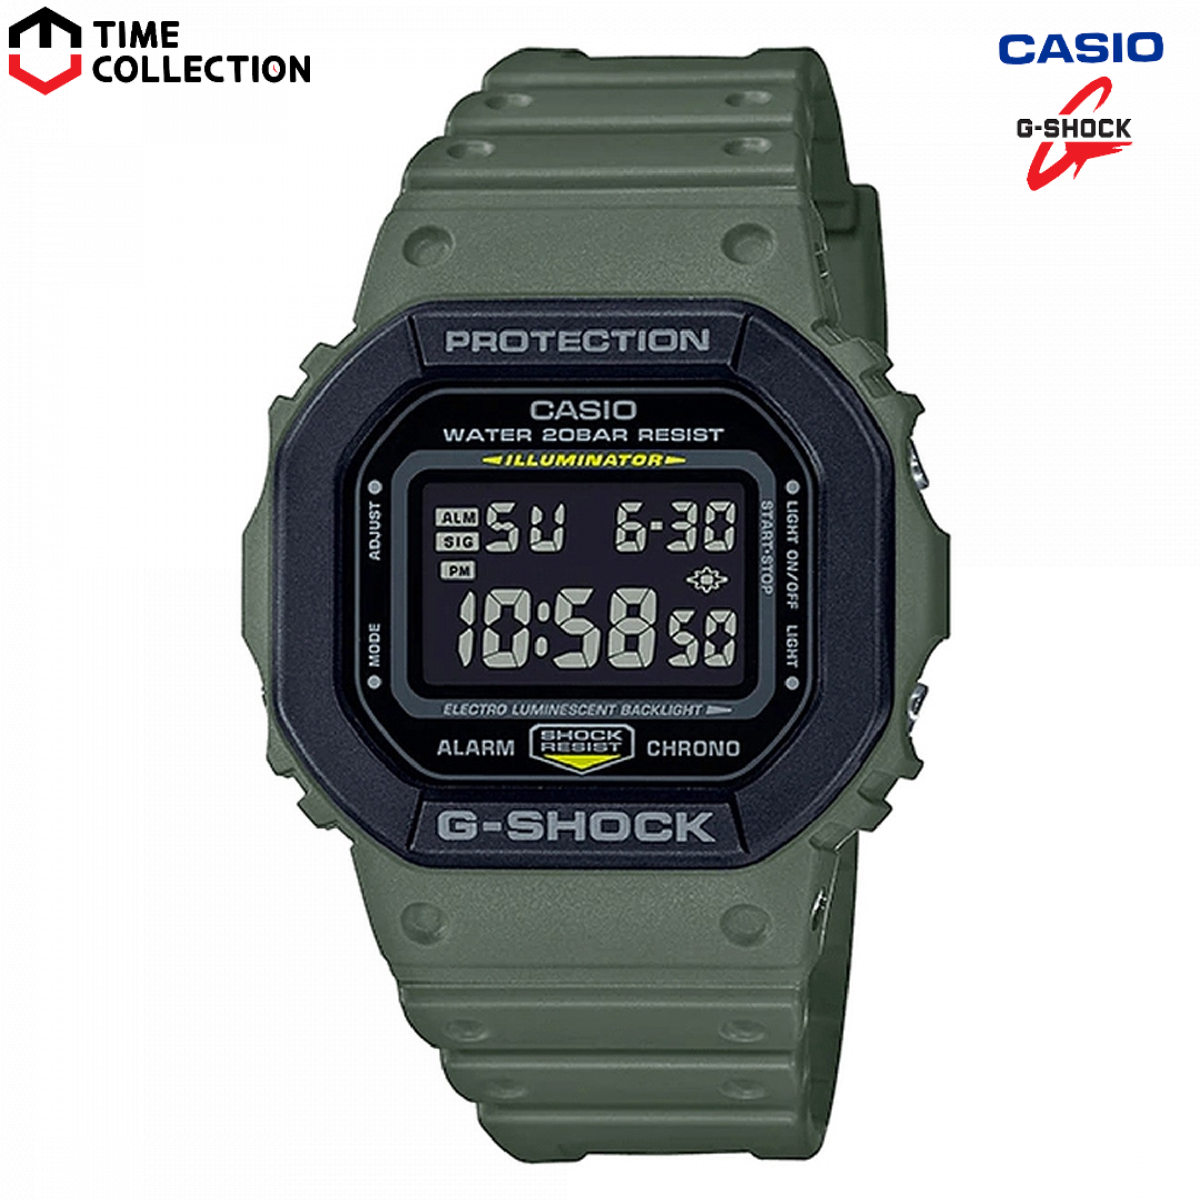 Casio G-Shock Classic Core Watch DW5600E-1V